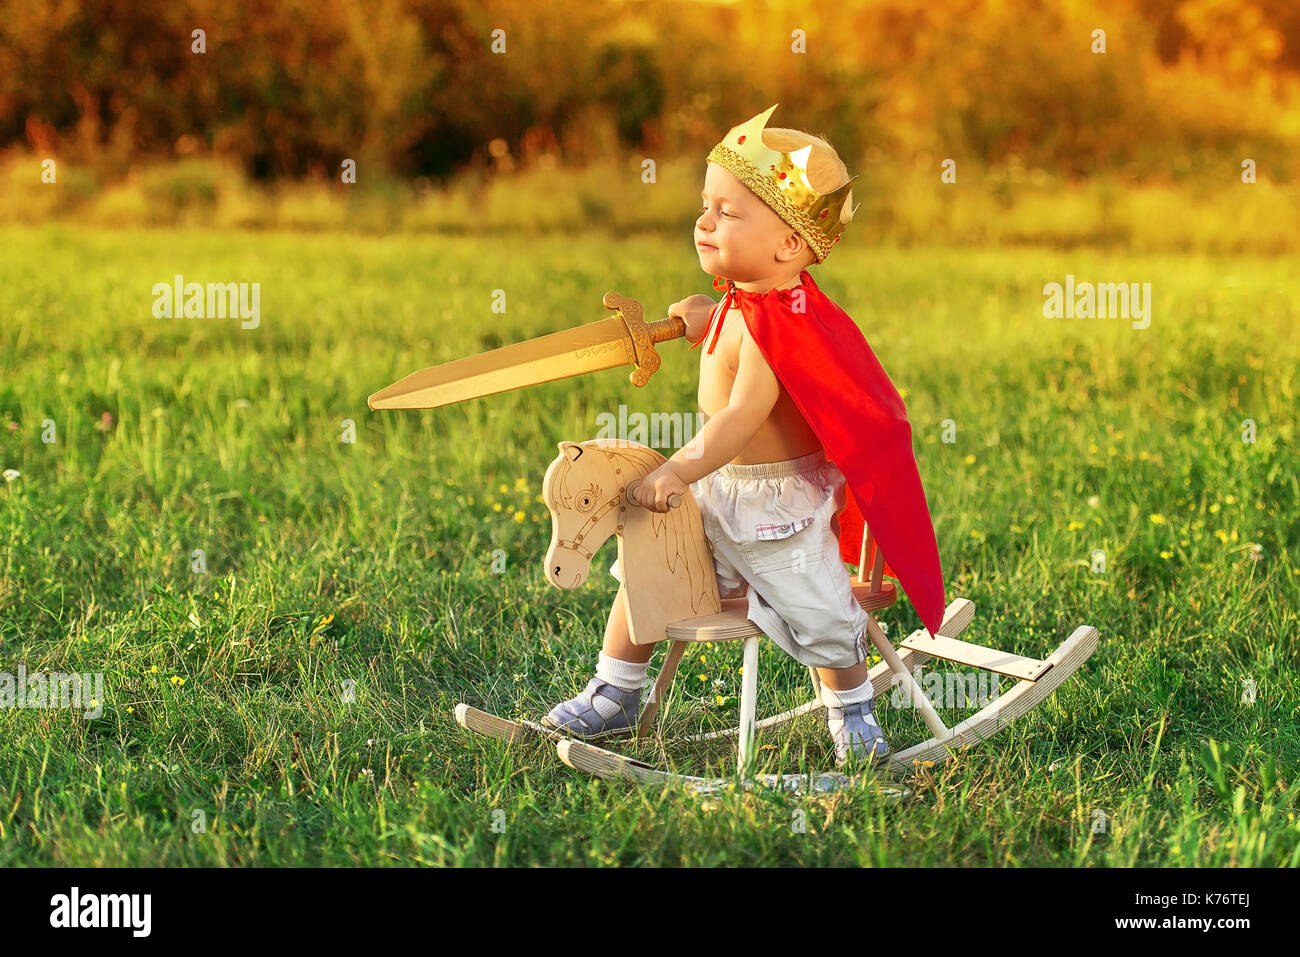 Der König das Kind rittlings auf einem Pferd spielt mit einem Schwert. Kleine Prinz mit einer Krone auf dem Kopf und in einem roten Regenmantel. Stockfoto